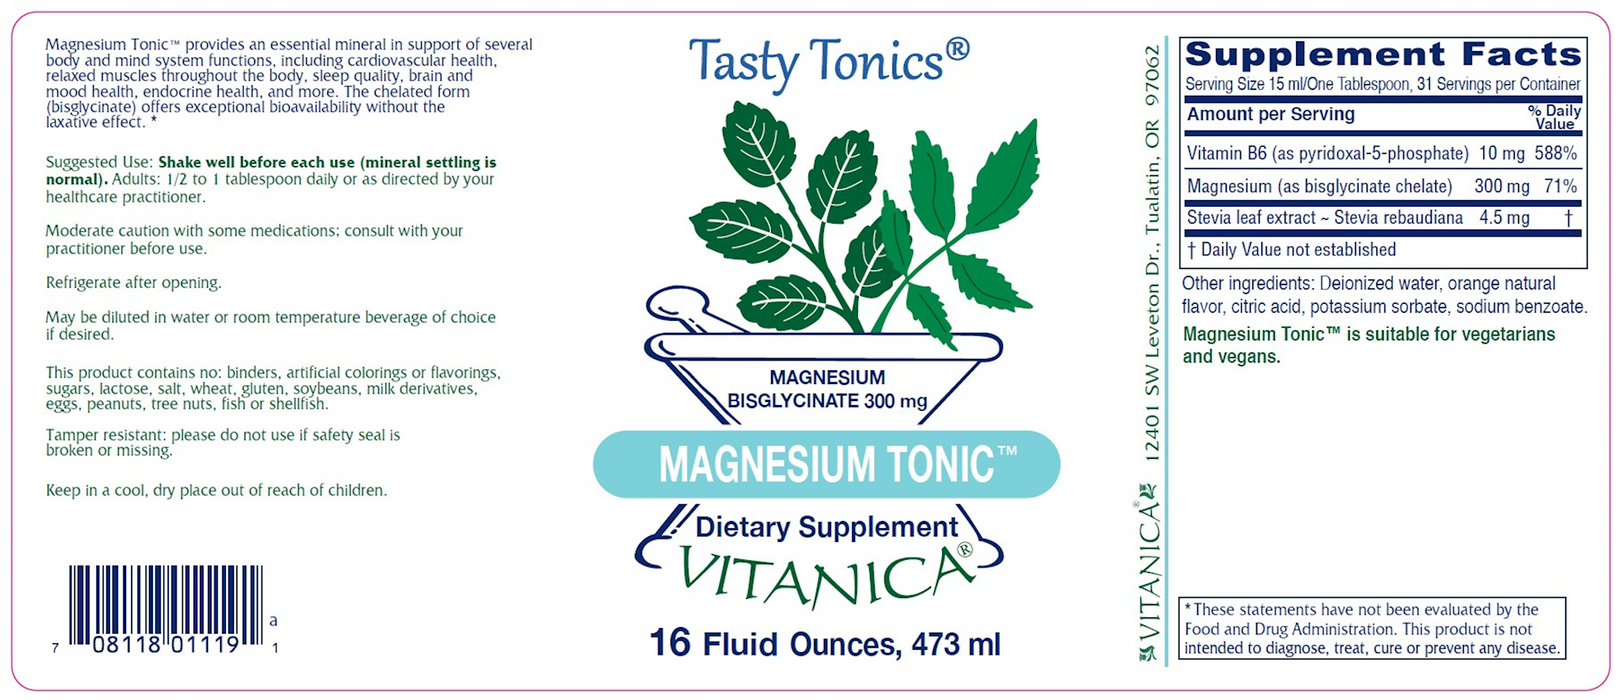 Magnesium Tonic